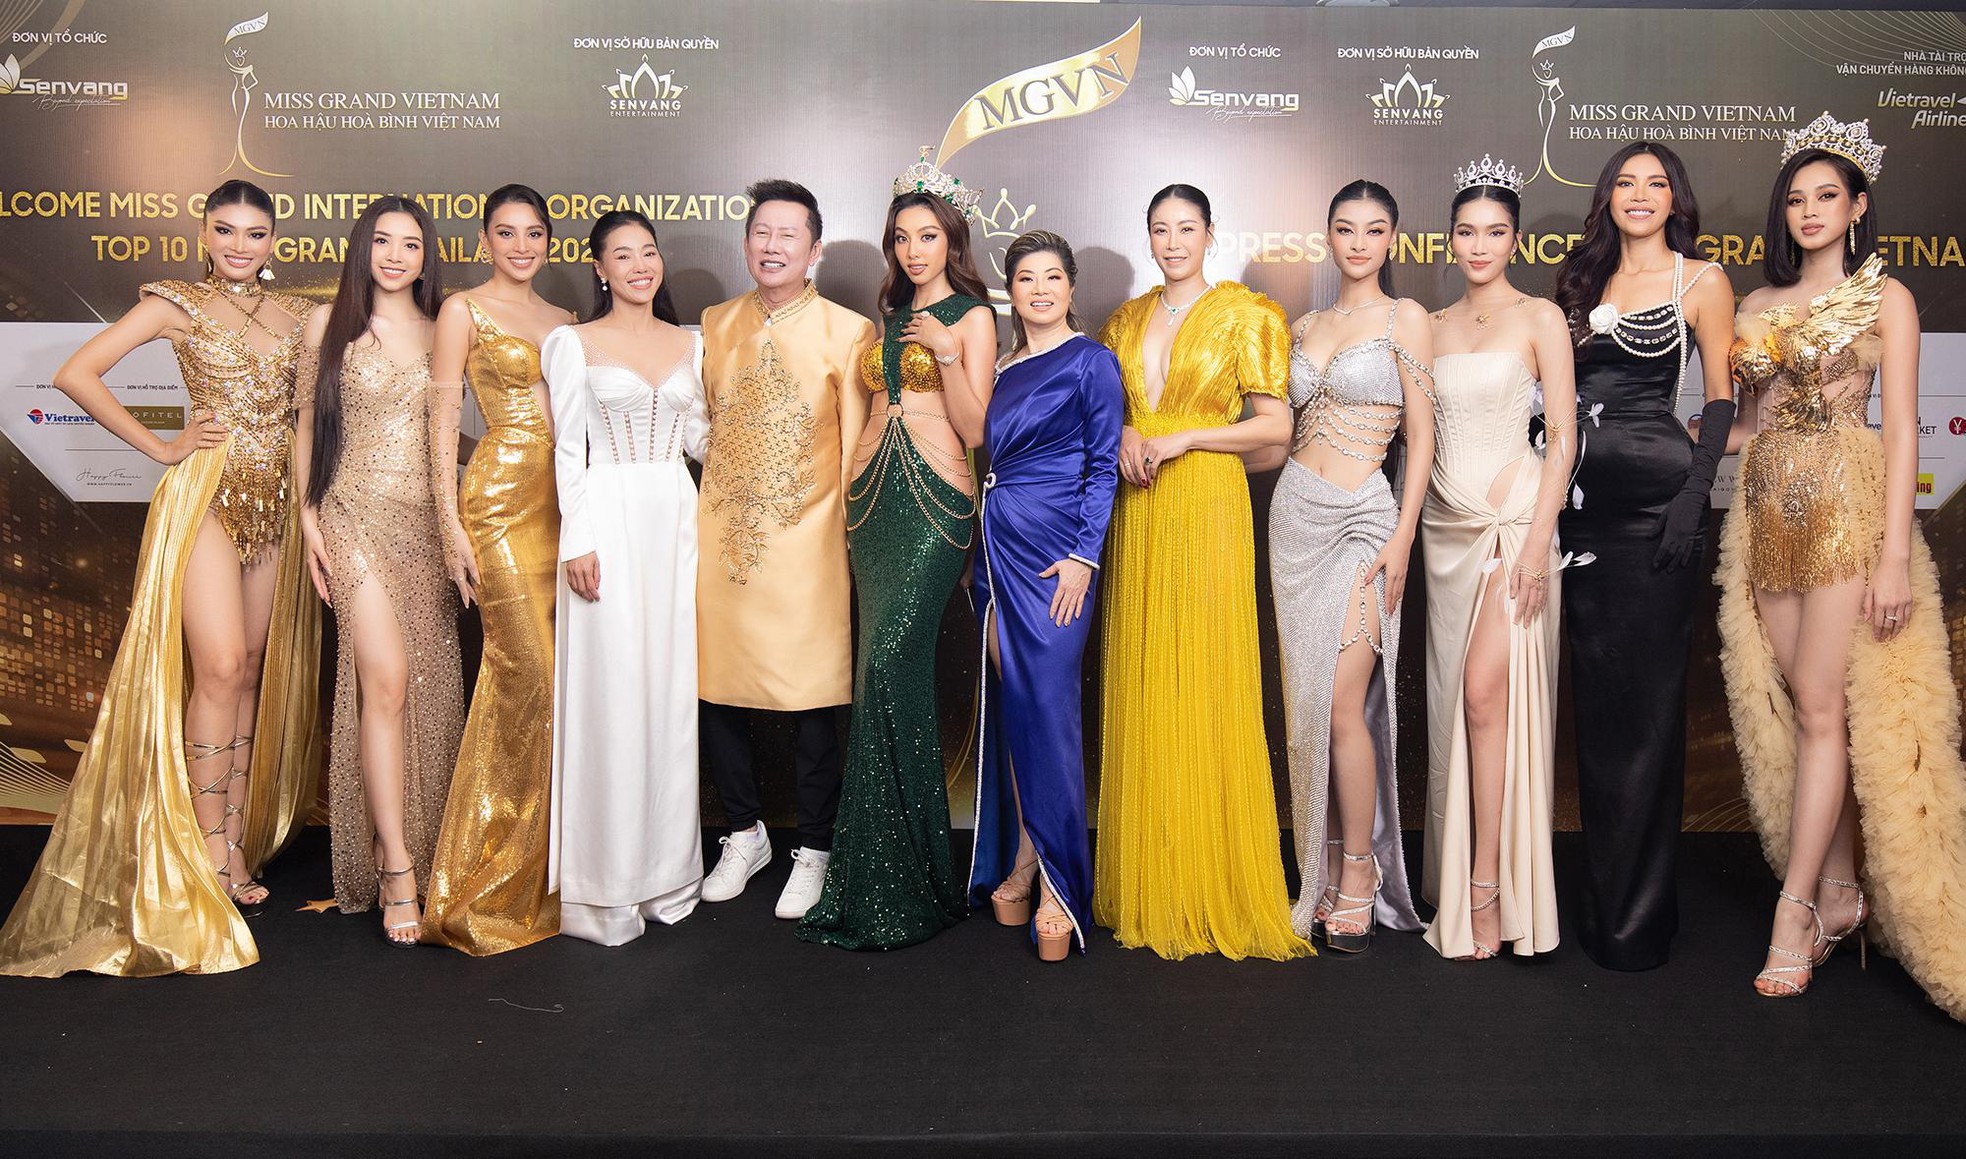 Hoa hậu Thùy Tiên đeo trang sức giá &quot;khủng&quot; xuất hiện giữa lùm xùm tranh chấp tên Hoa hậu Hòa bình Việt Nam - Ảnh 8.